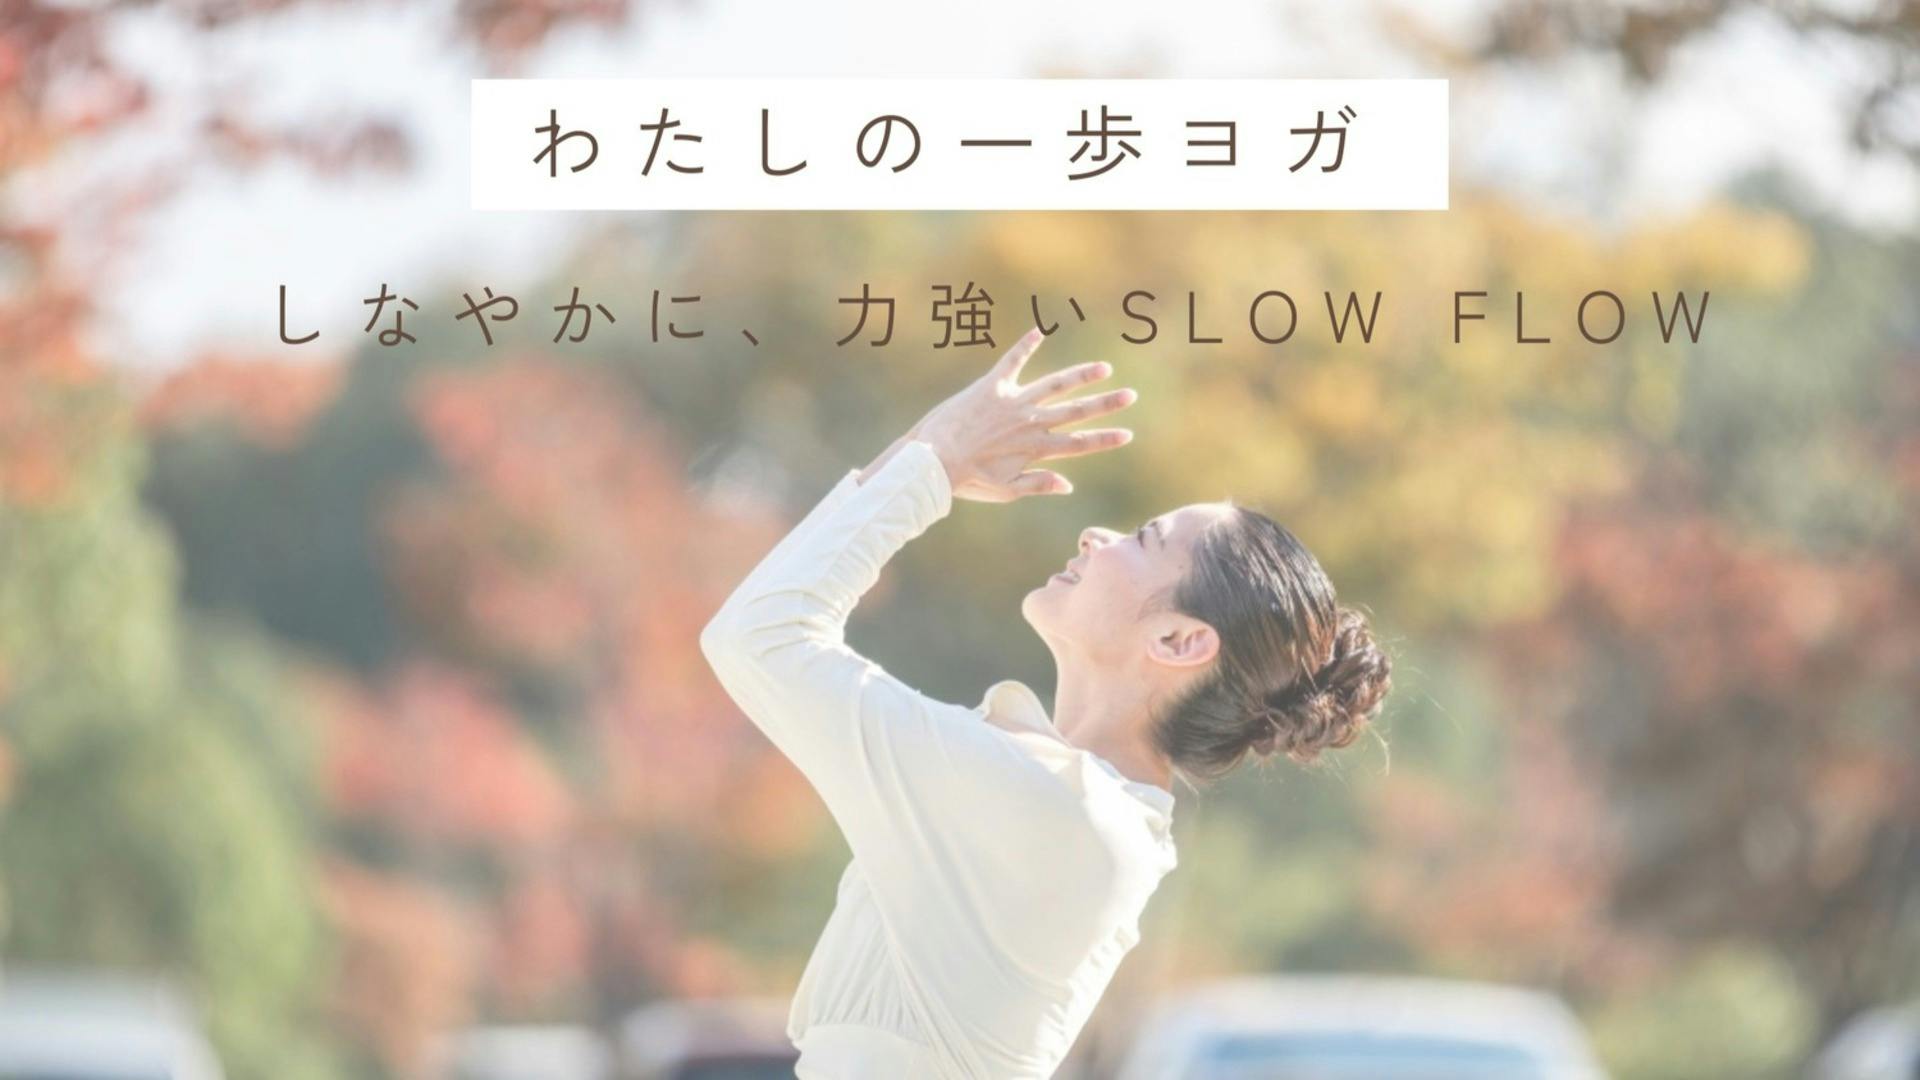 ”わたしの一歩ヨガ” Slow Flow Yoga